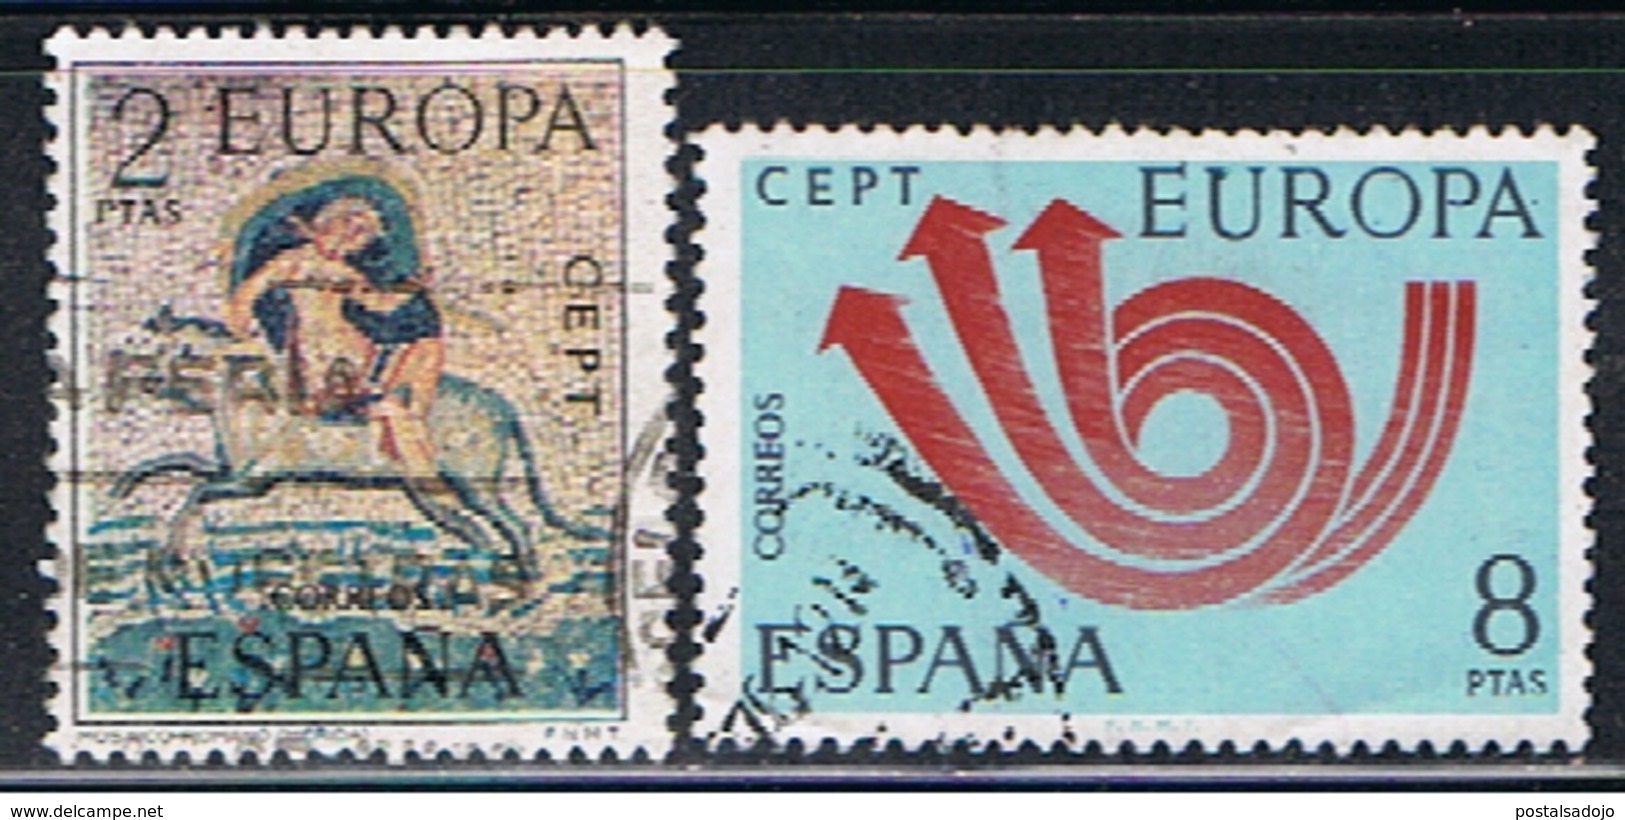 (2E 442) ESPAÑA // YVERT 1779, 1780  // EDIFIL   2125, 2126 //  1973 - Oblitérés